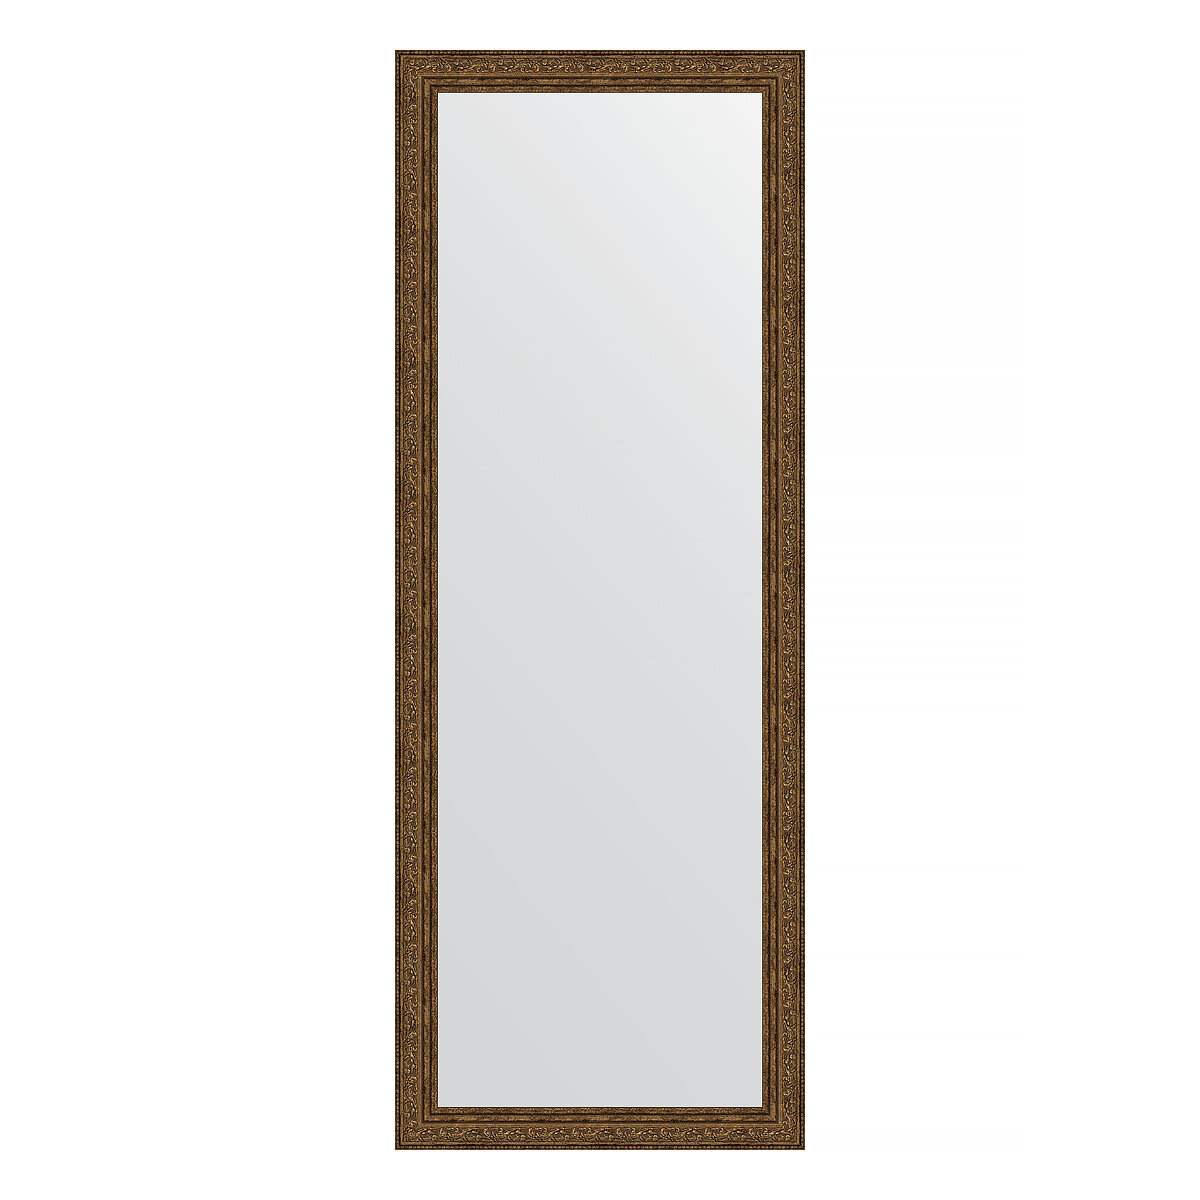 Зеркало настенное EVOFORM в багетной раме виньетка состаренная бронза, 54х144 см, для гостиной, прихожей, кабинета, спальни и ванной комнаты, BY 3105